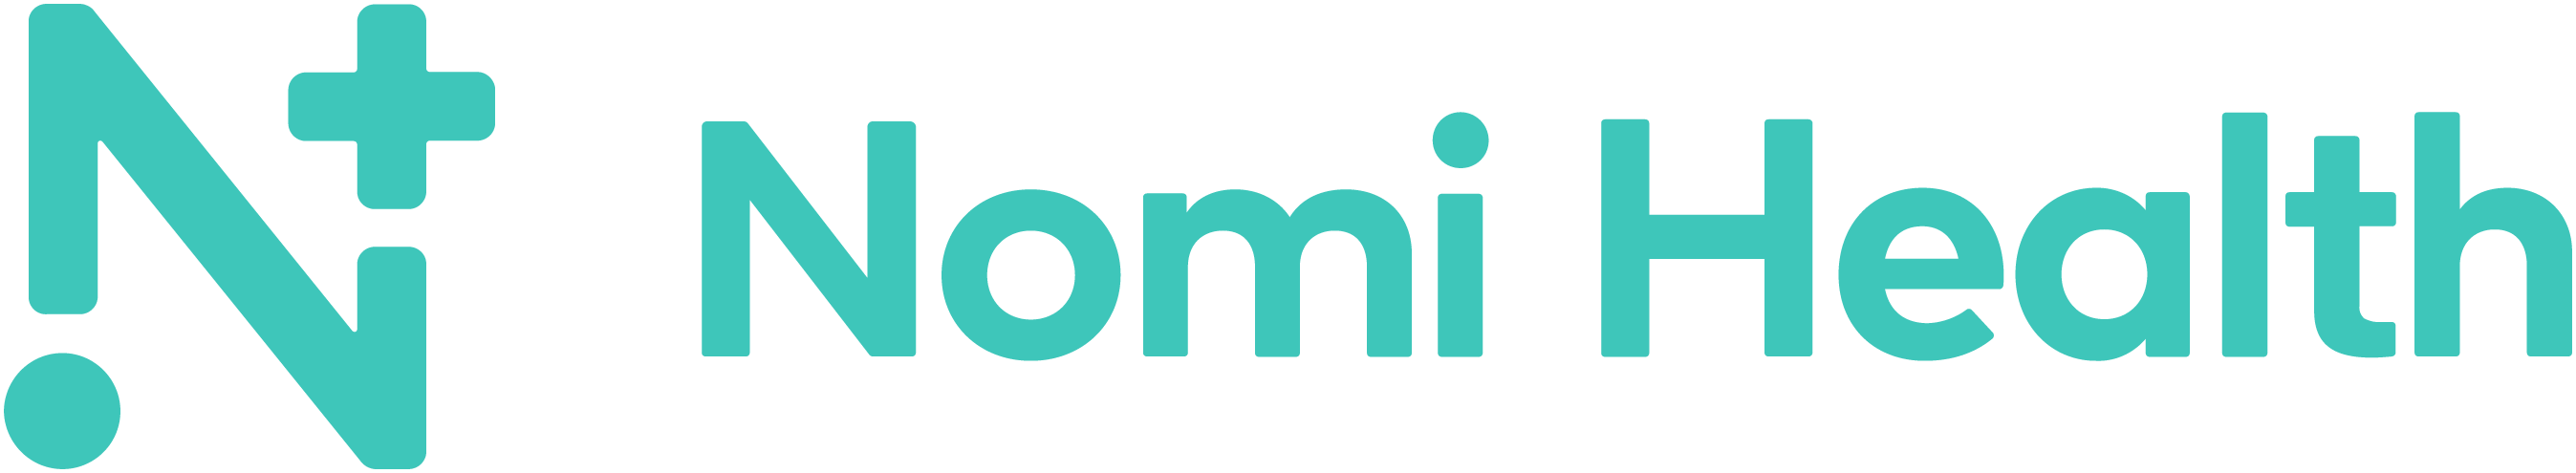 Nomi Health logo